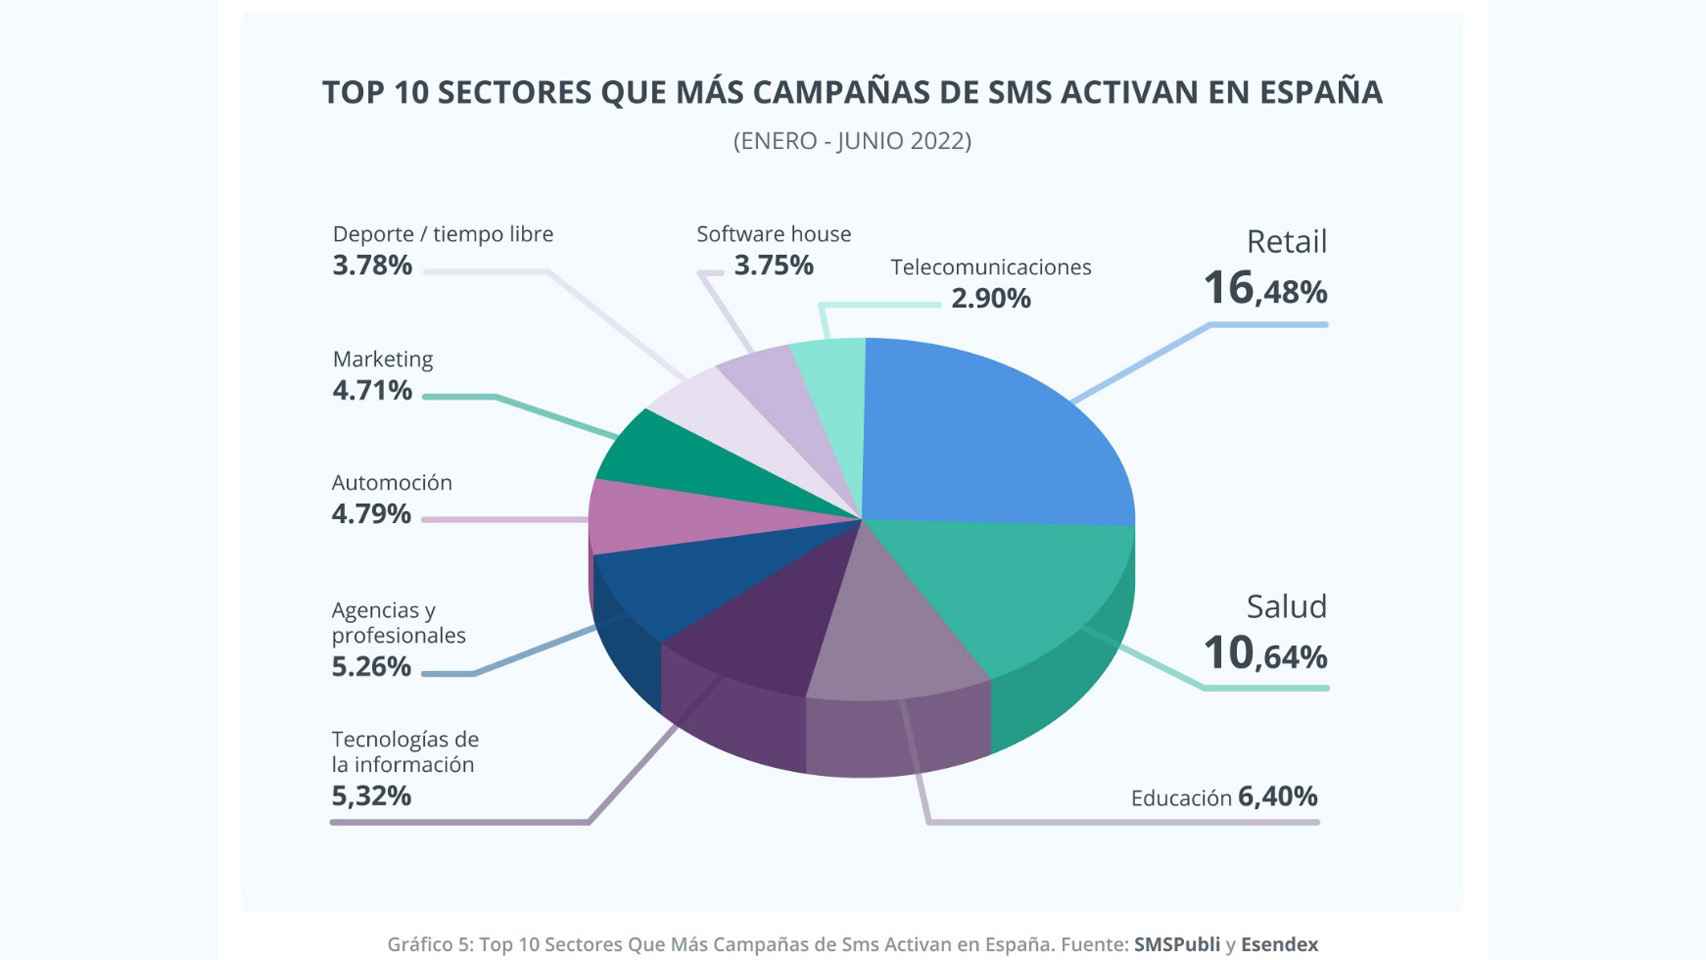 Sectores que más campañas activaron de SMS.